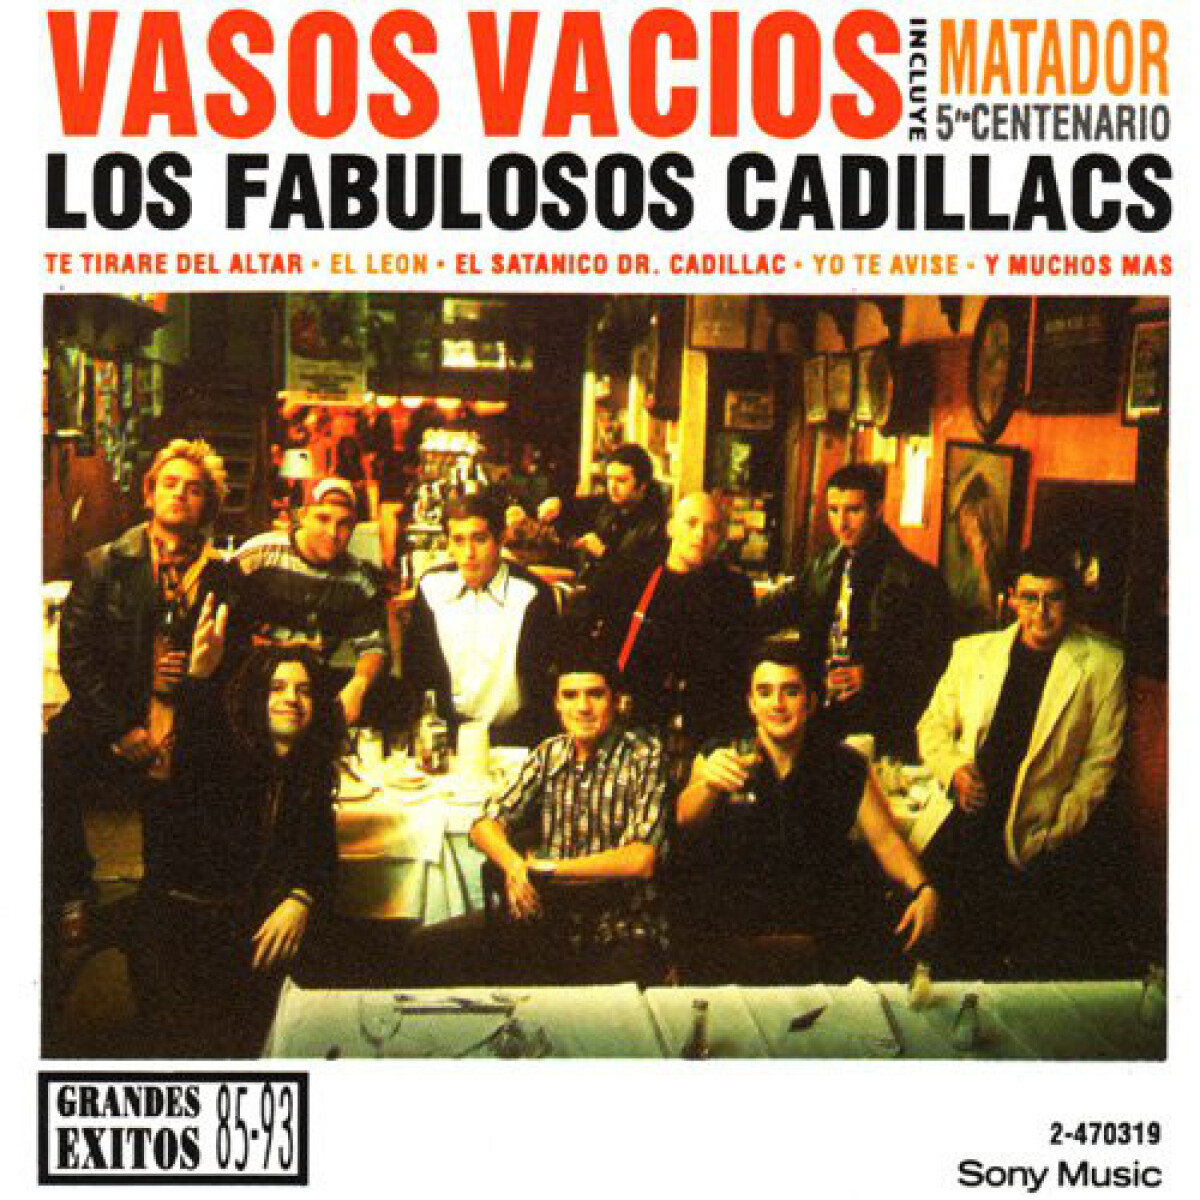 Los Fabulosos Cadillacs - Vasos Vacios - Vinilo 